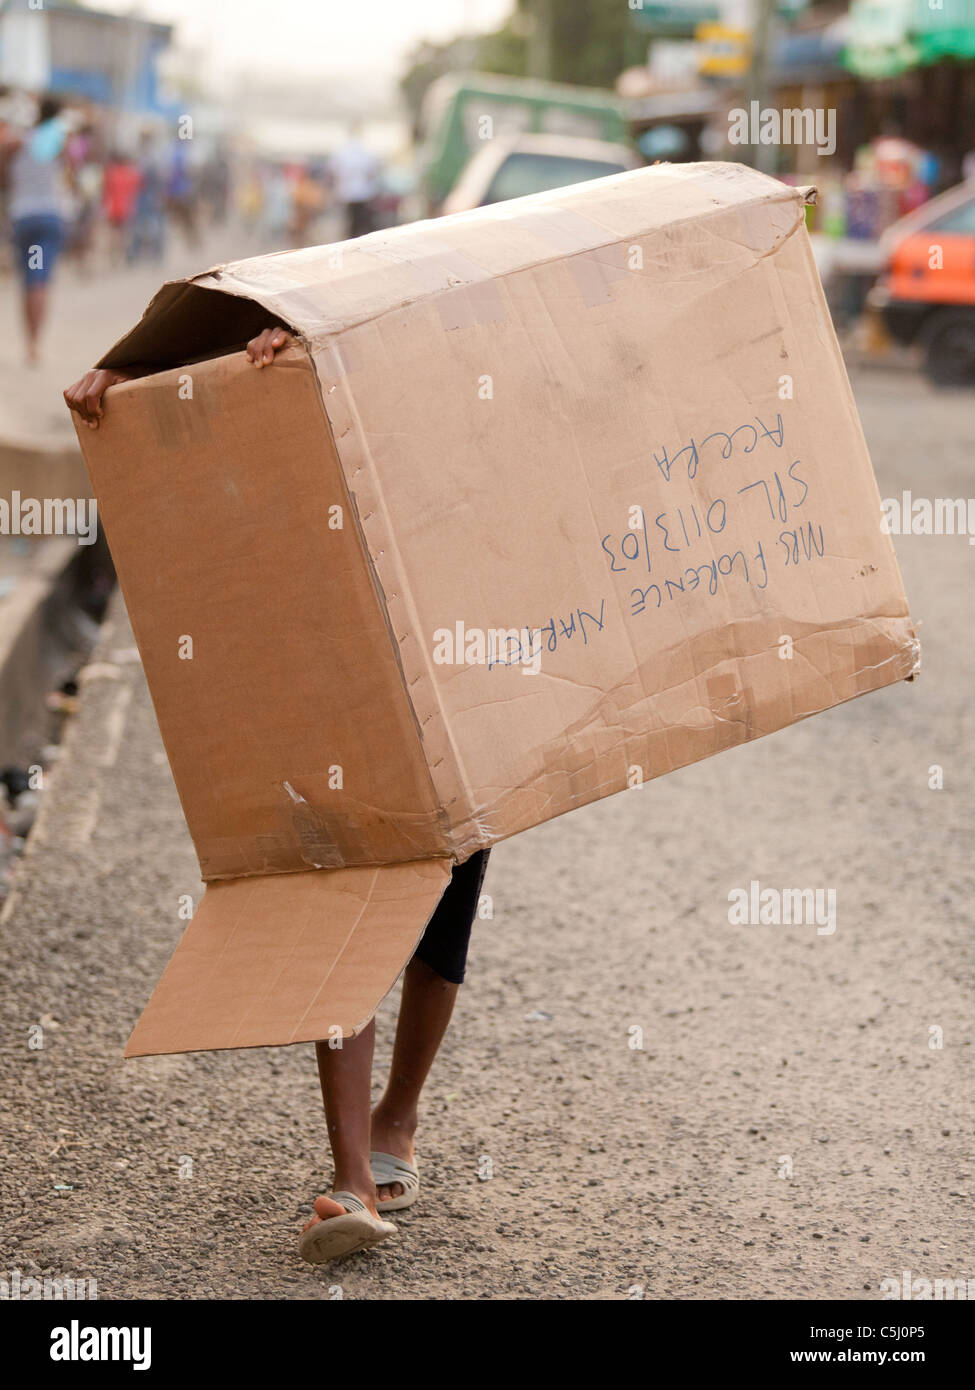 Afrikanischen jungen fallenden Karton, auf Straße, Osu Markt, Accra, Ghana Stockfoto